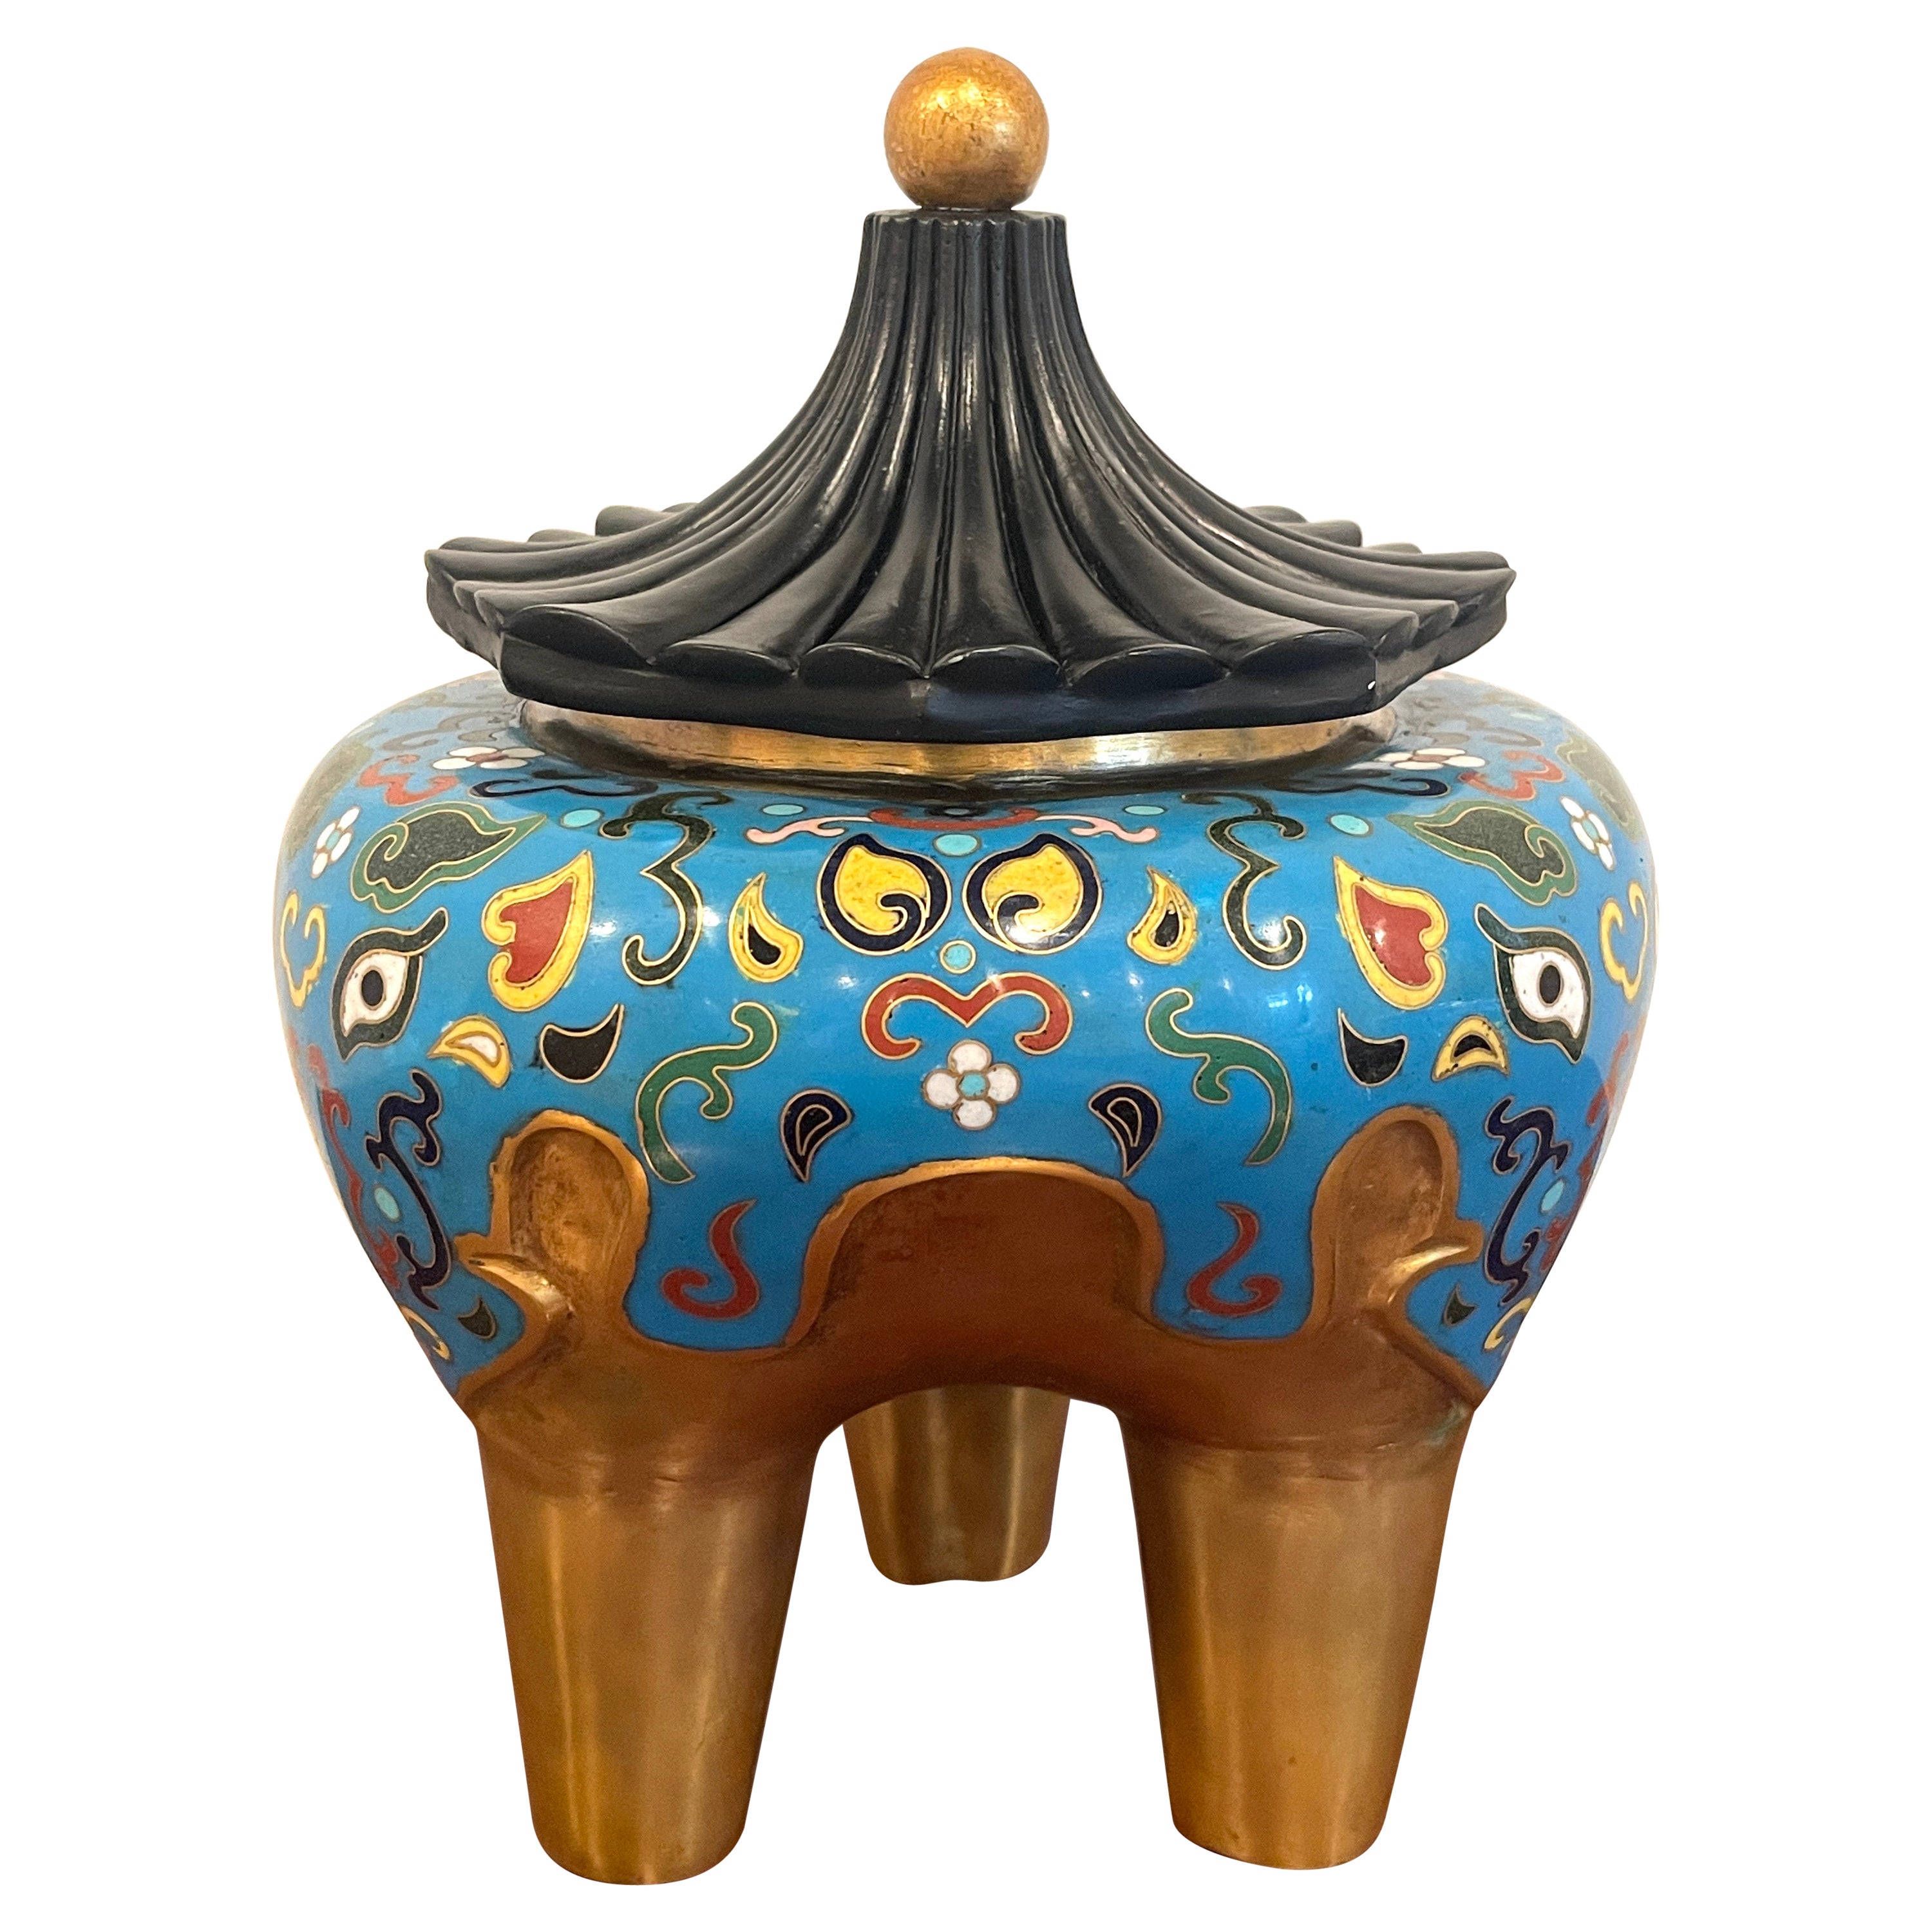 Chinesischer Zensor im archaischen Stil des 19. Jahrhunderts aus Cloisonné und Lack mit Elefantenmotiv